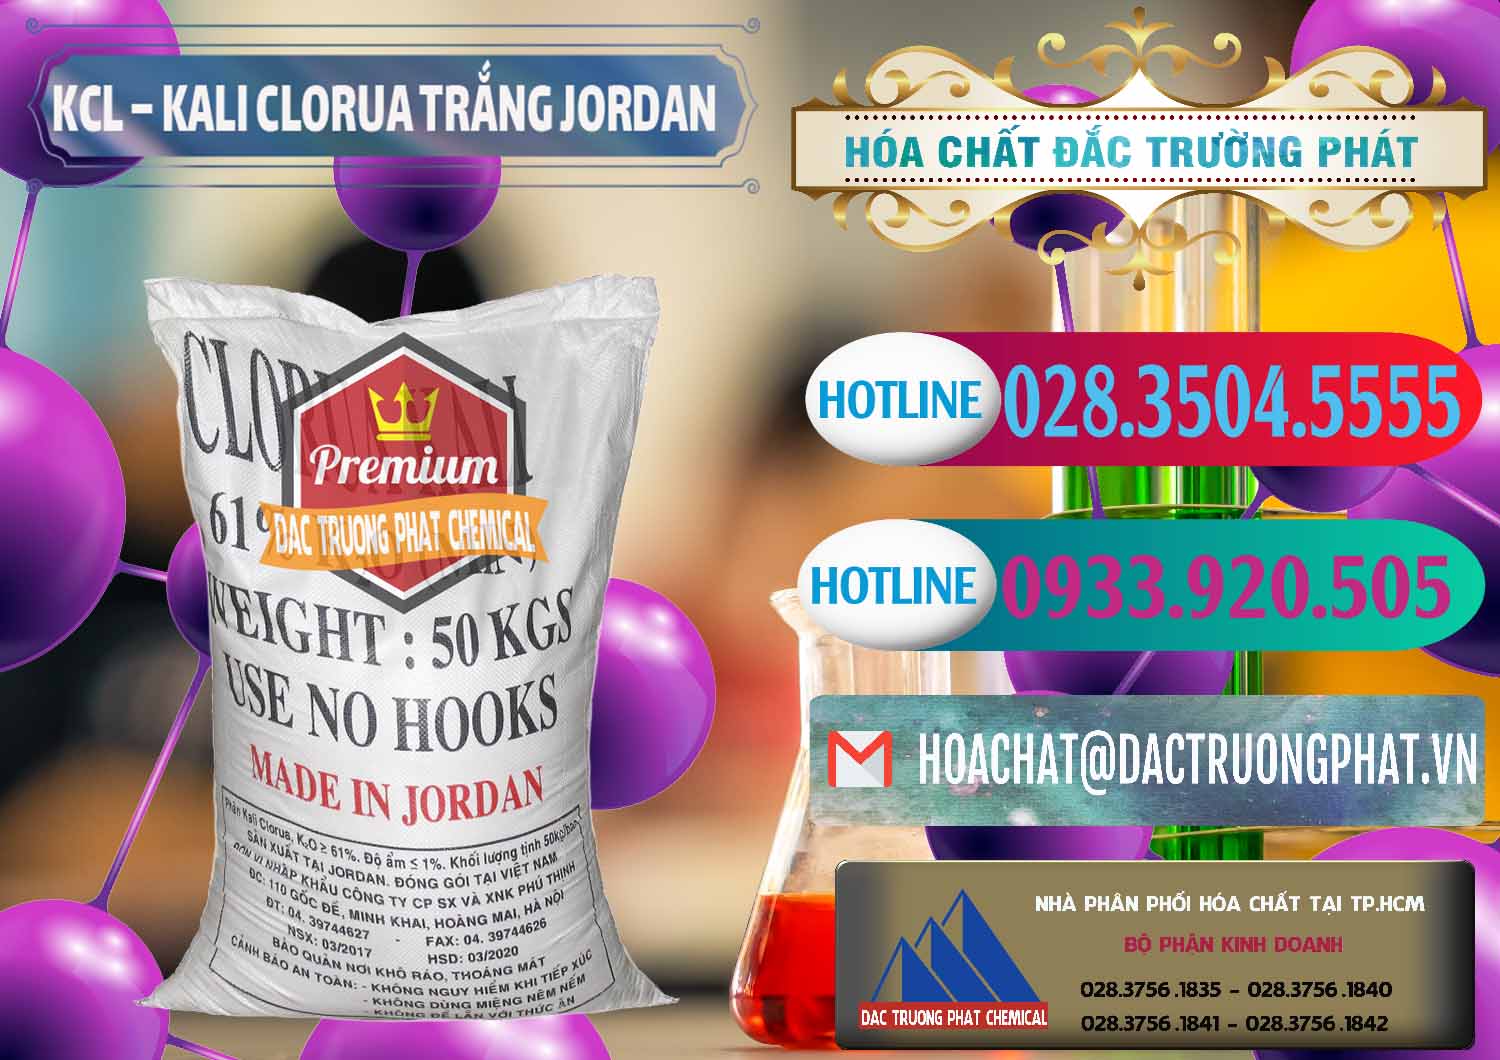 Chuyên bán & cung cấp KCL – Kali Clorua Trắng Jordan - 0088 - Nhà phân phối & kinh doanh hóa chất tại TP.HCM - truongphat.vn